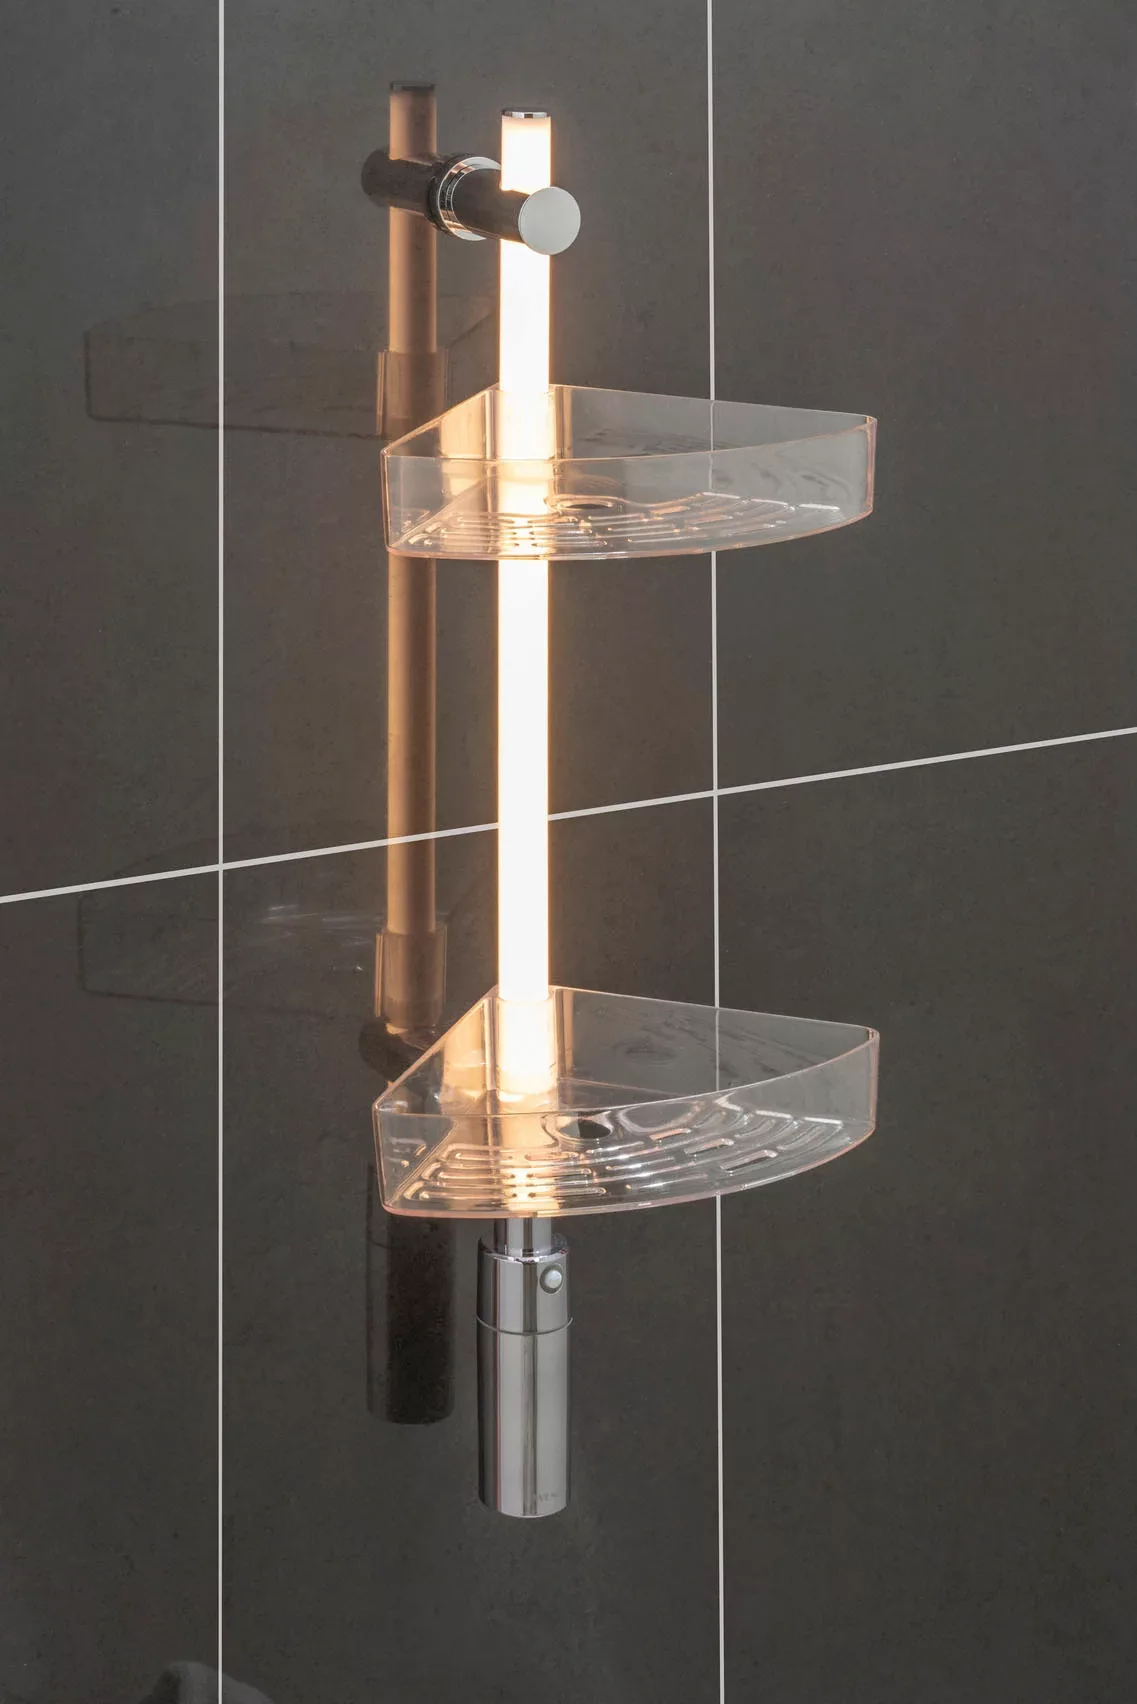 WENKO LED Duscheckregal, 74 cm, LED-Duschstange mit Bewegungsmelder und 2 A günstig online kaufen